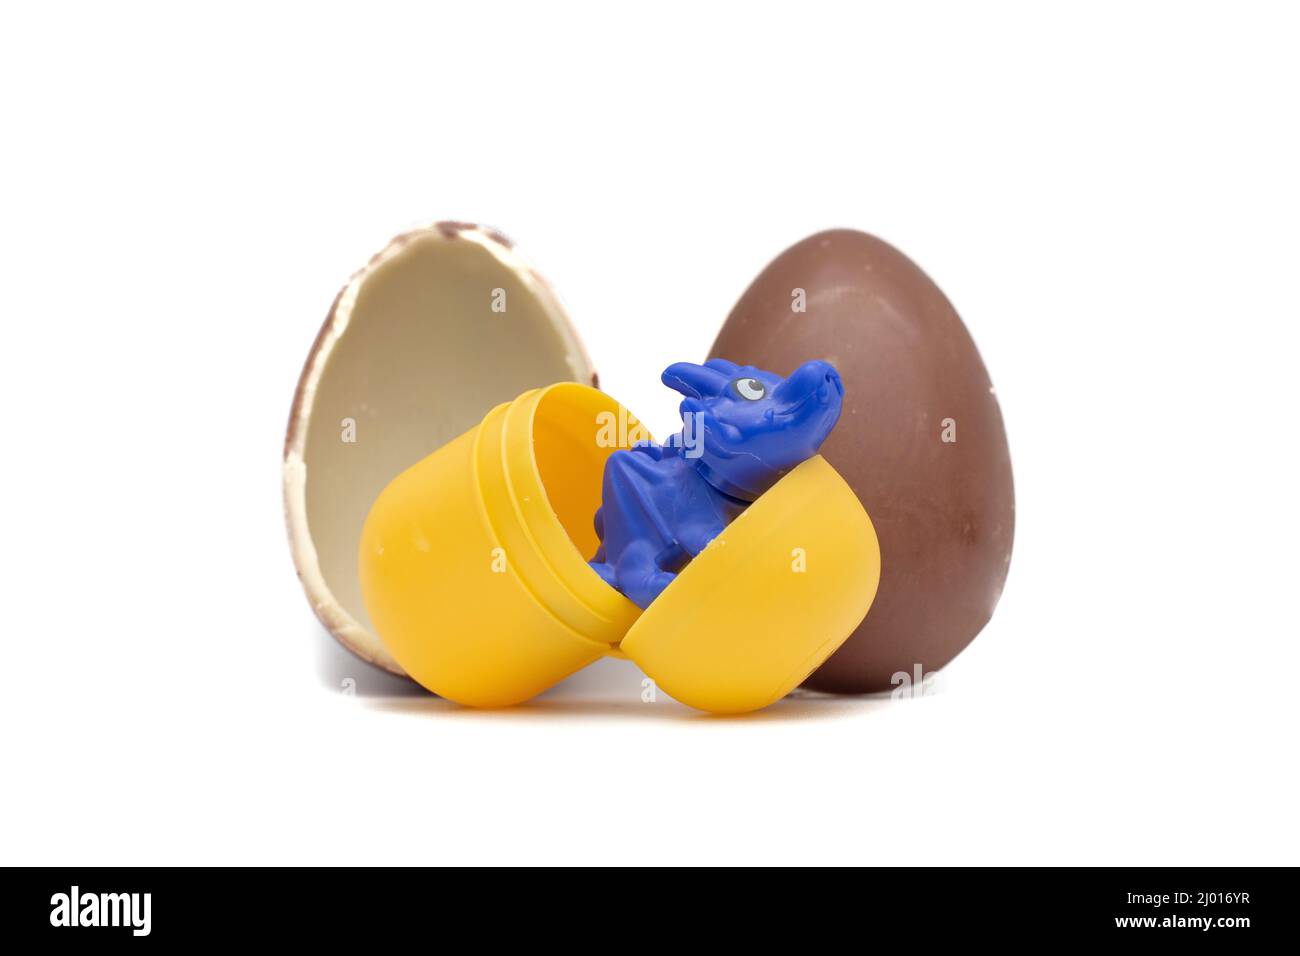 Il prodotto Kinder Surprise è costituito da un uovo di cioccolato, con uno strato interno di cioccolato bianco, che contiene una capsula di plastica con una sorpresa. Foto Stock